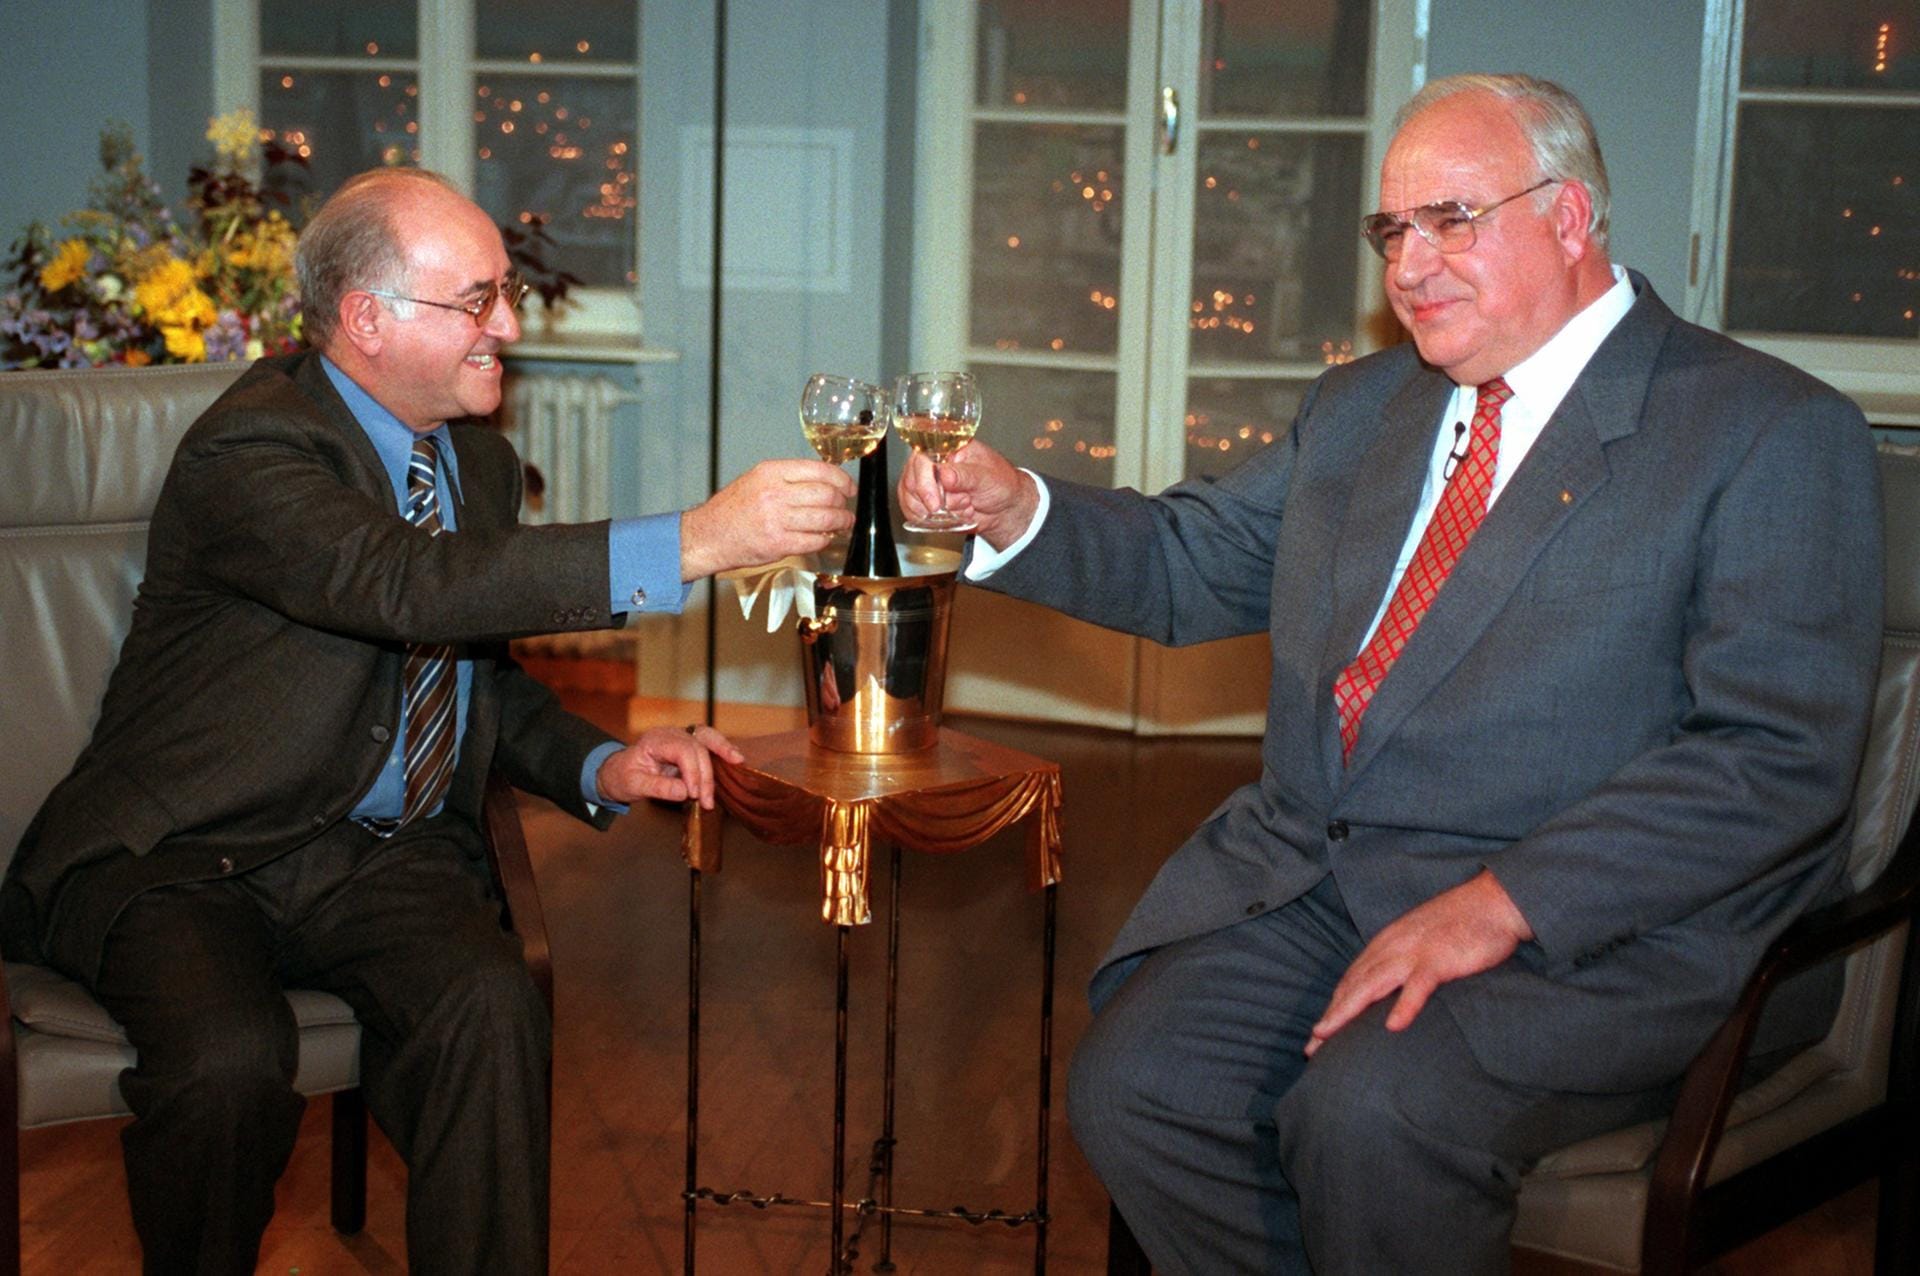 Der damalige Bundeskanzler Helmut Kohl prostet in der Sendung "Boulevard Bio" Talkmaster Alfred Biolek zu.